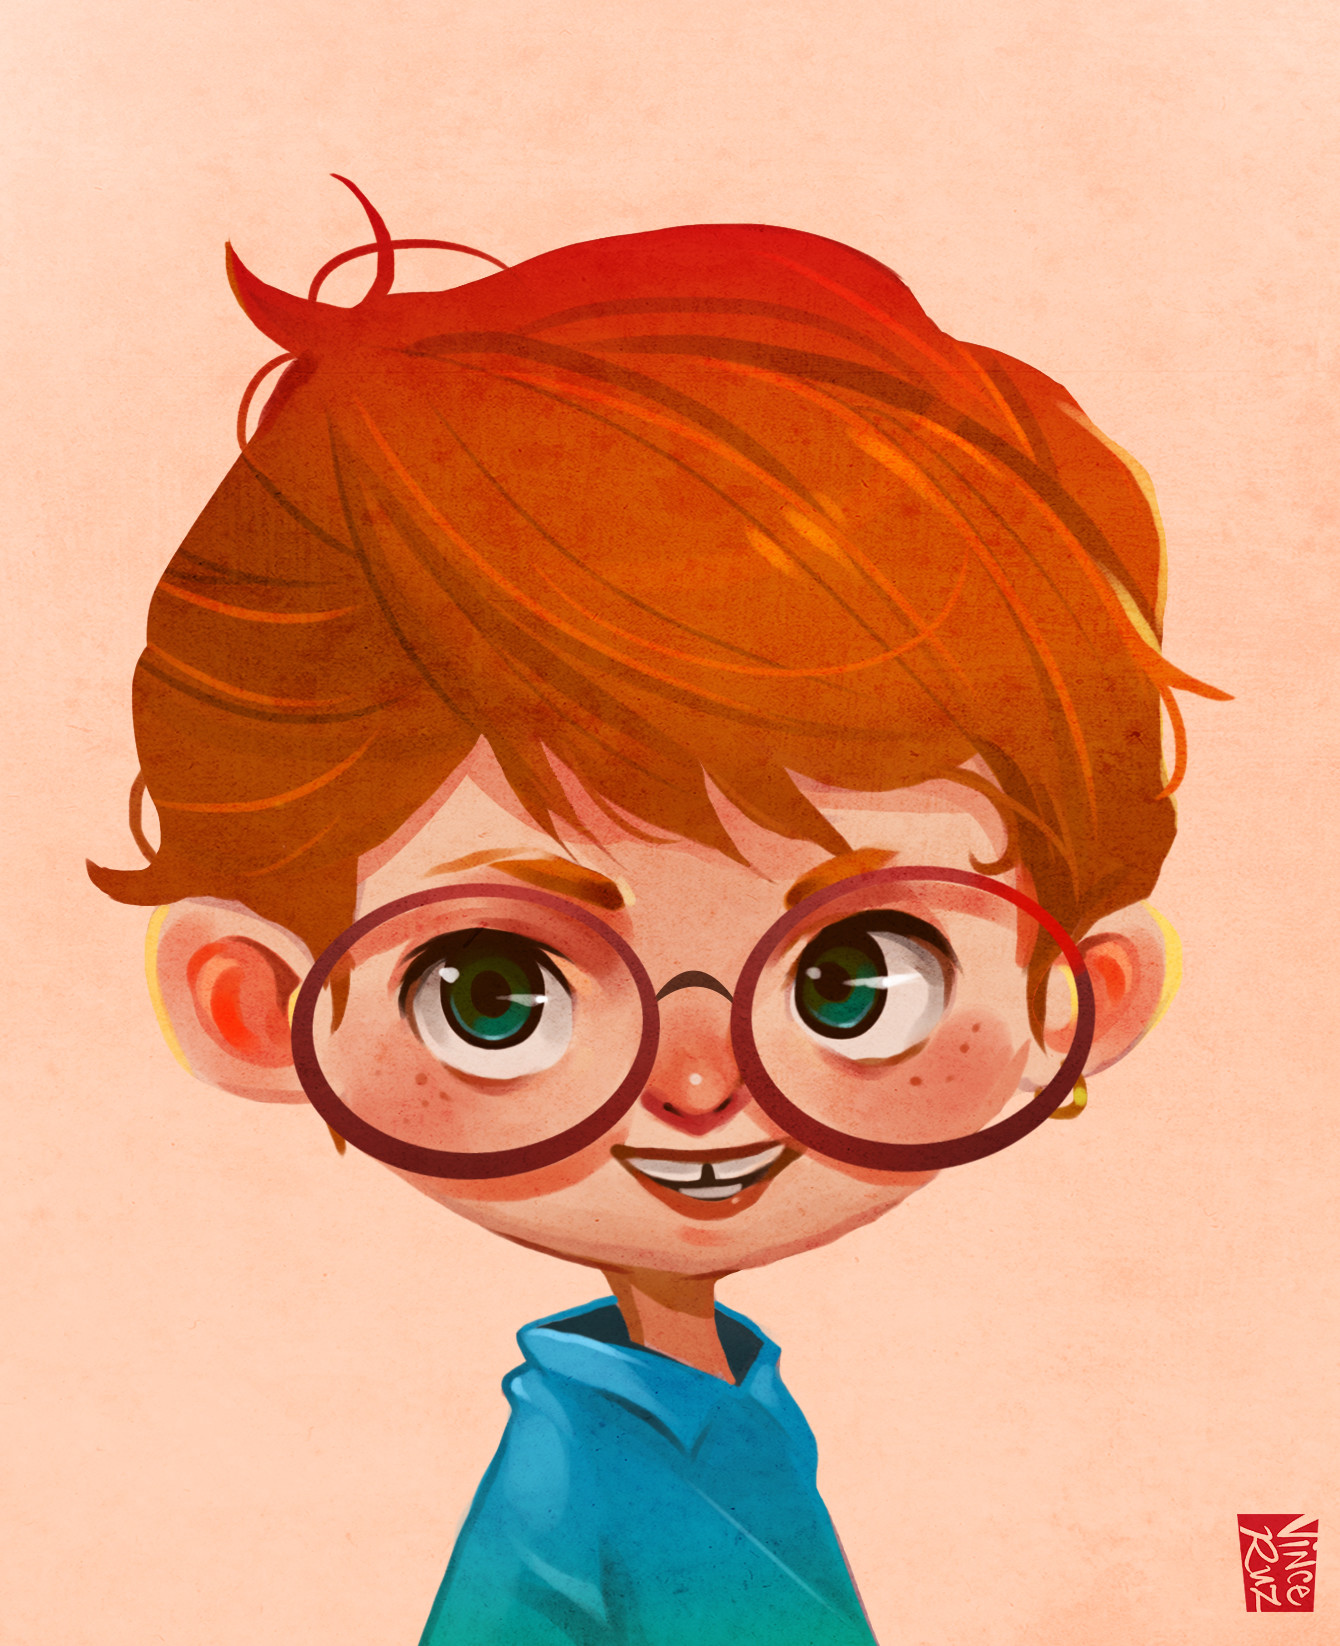 ArtStation - Redhead boy